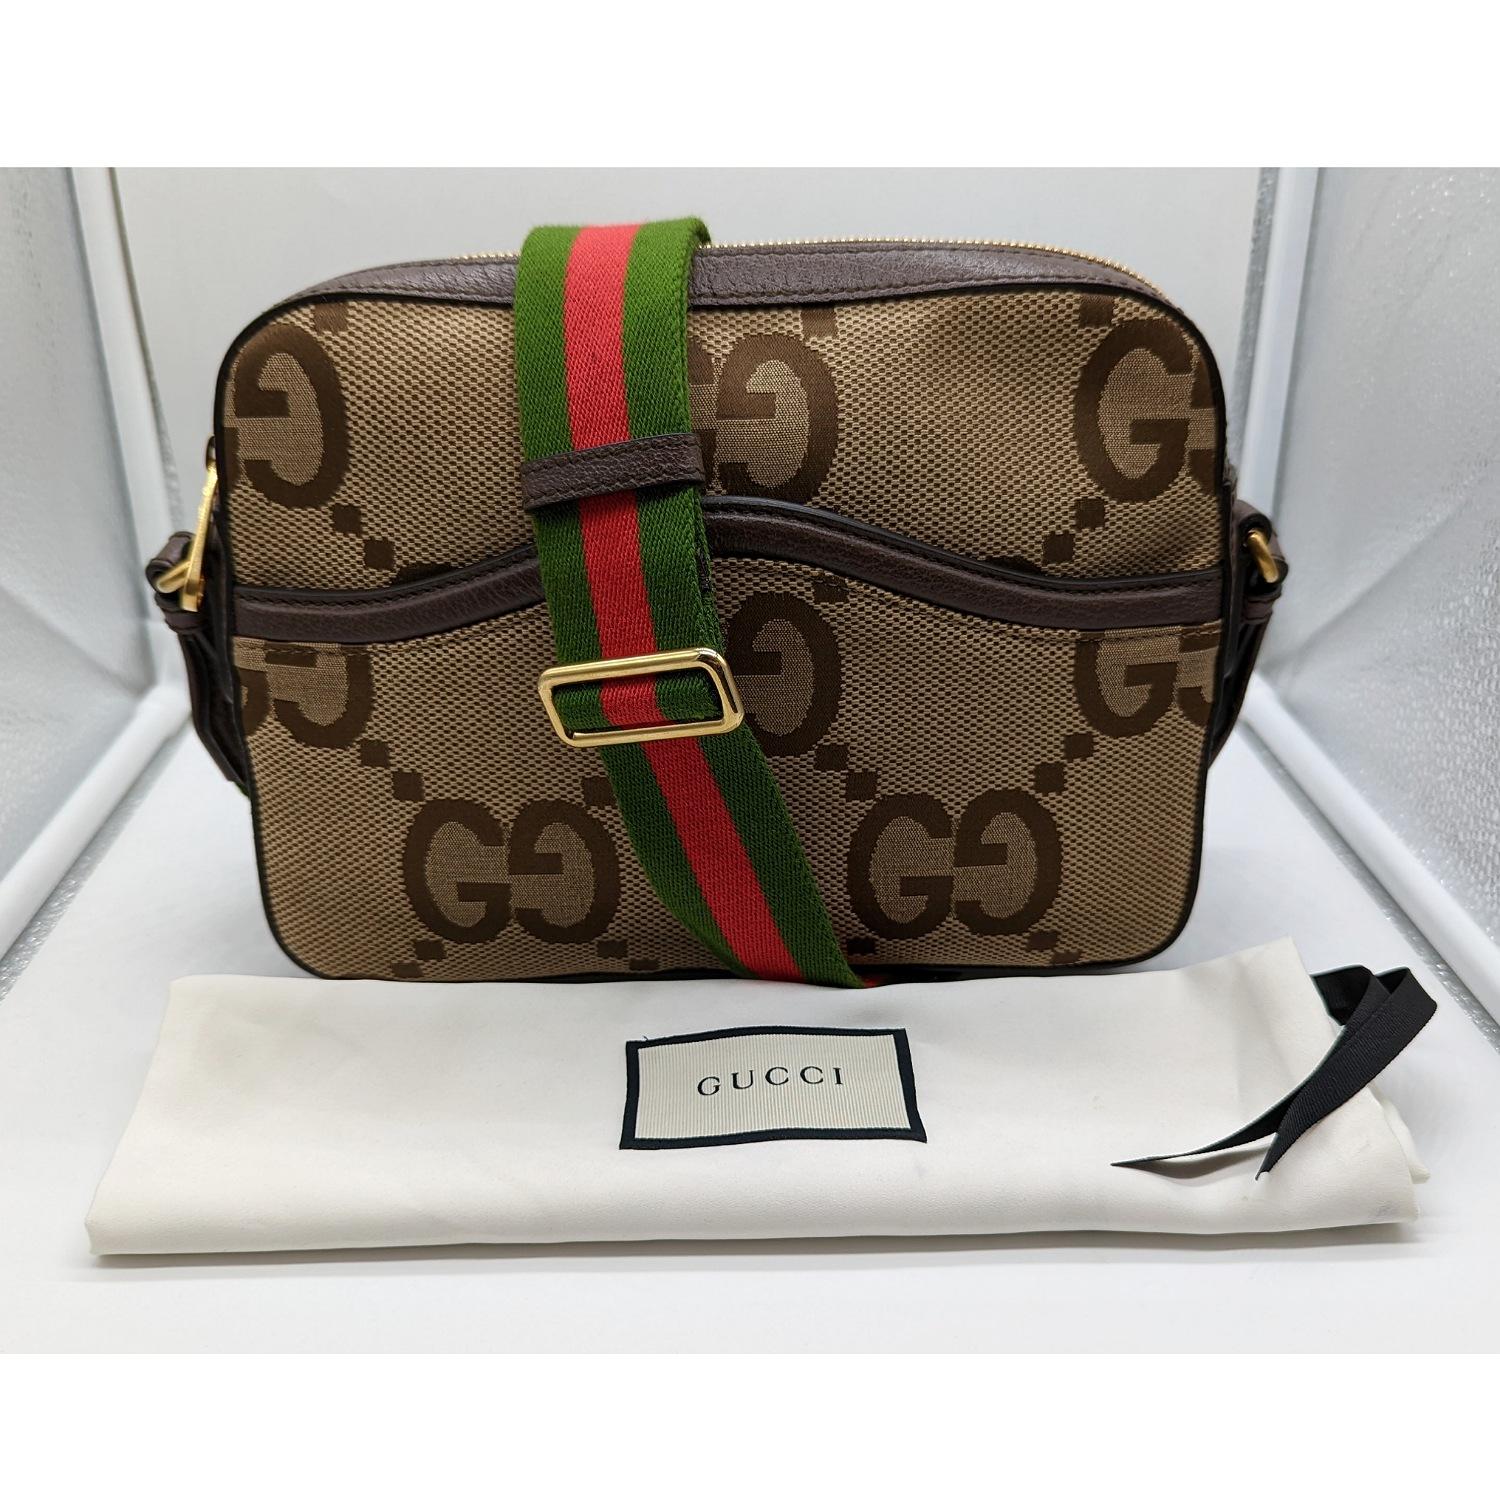 Gucci Messenger Bag with Jumbo GG 675891 2